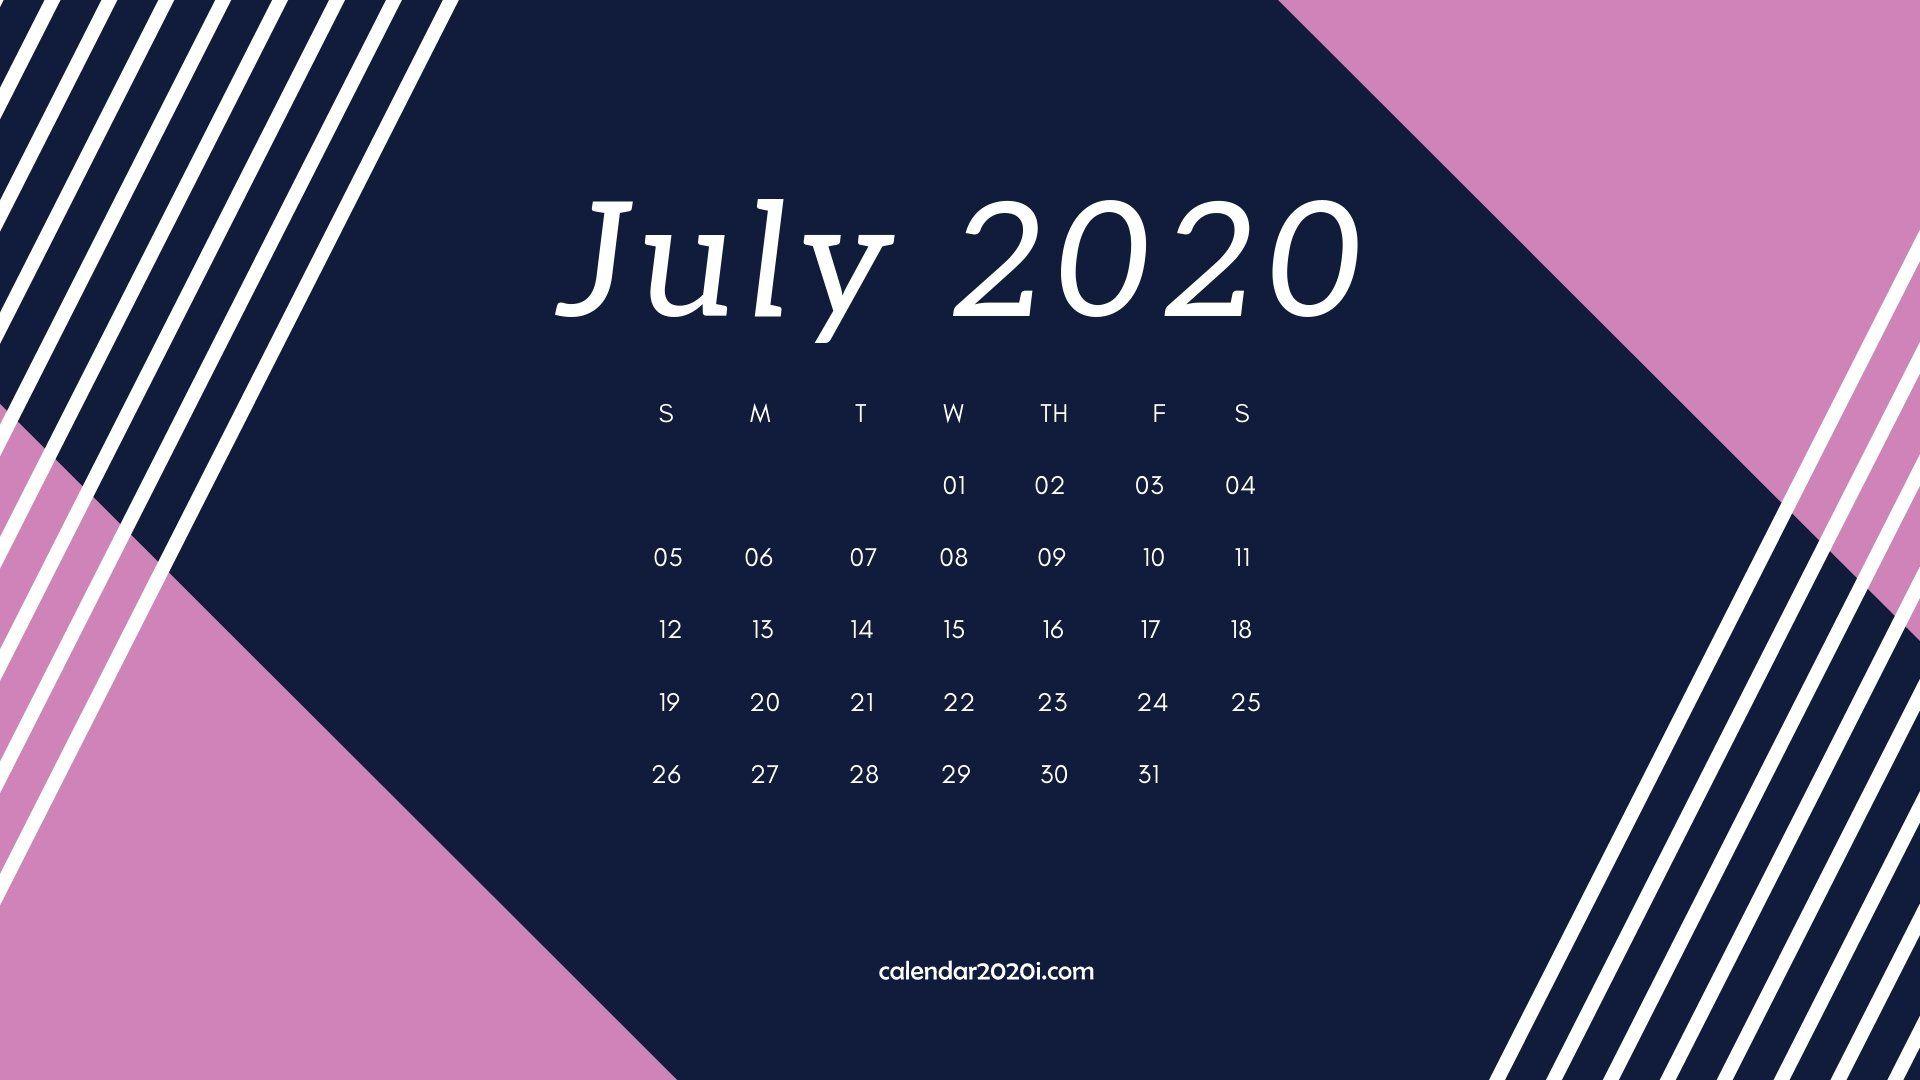 July 2020 Calendar Desktop Wallpaper Calendars